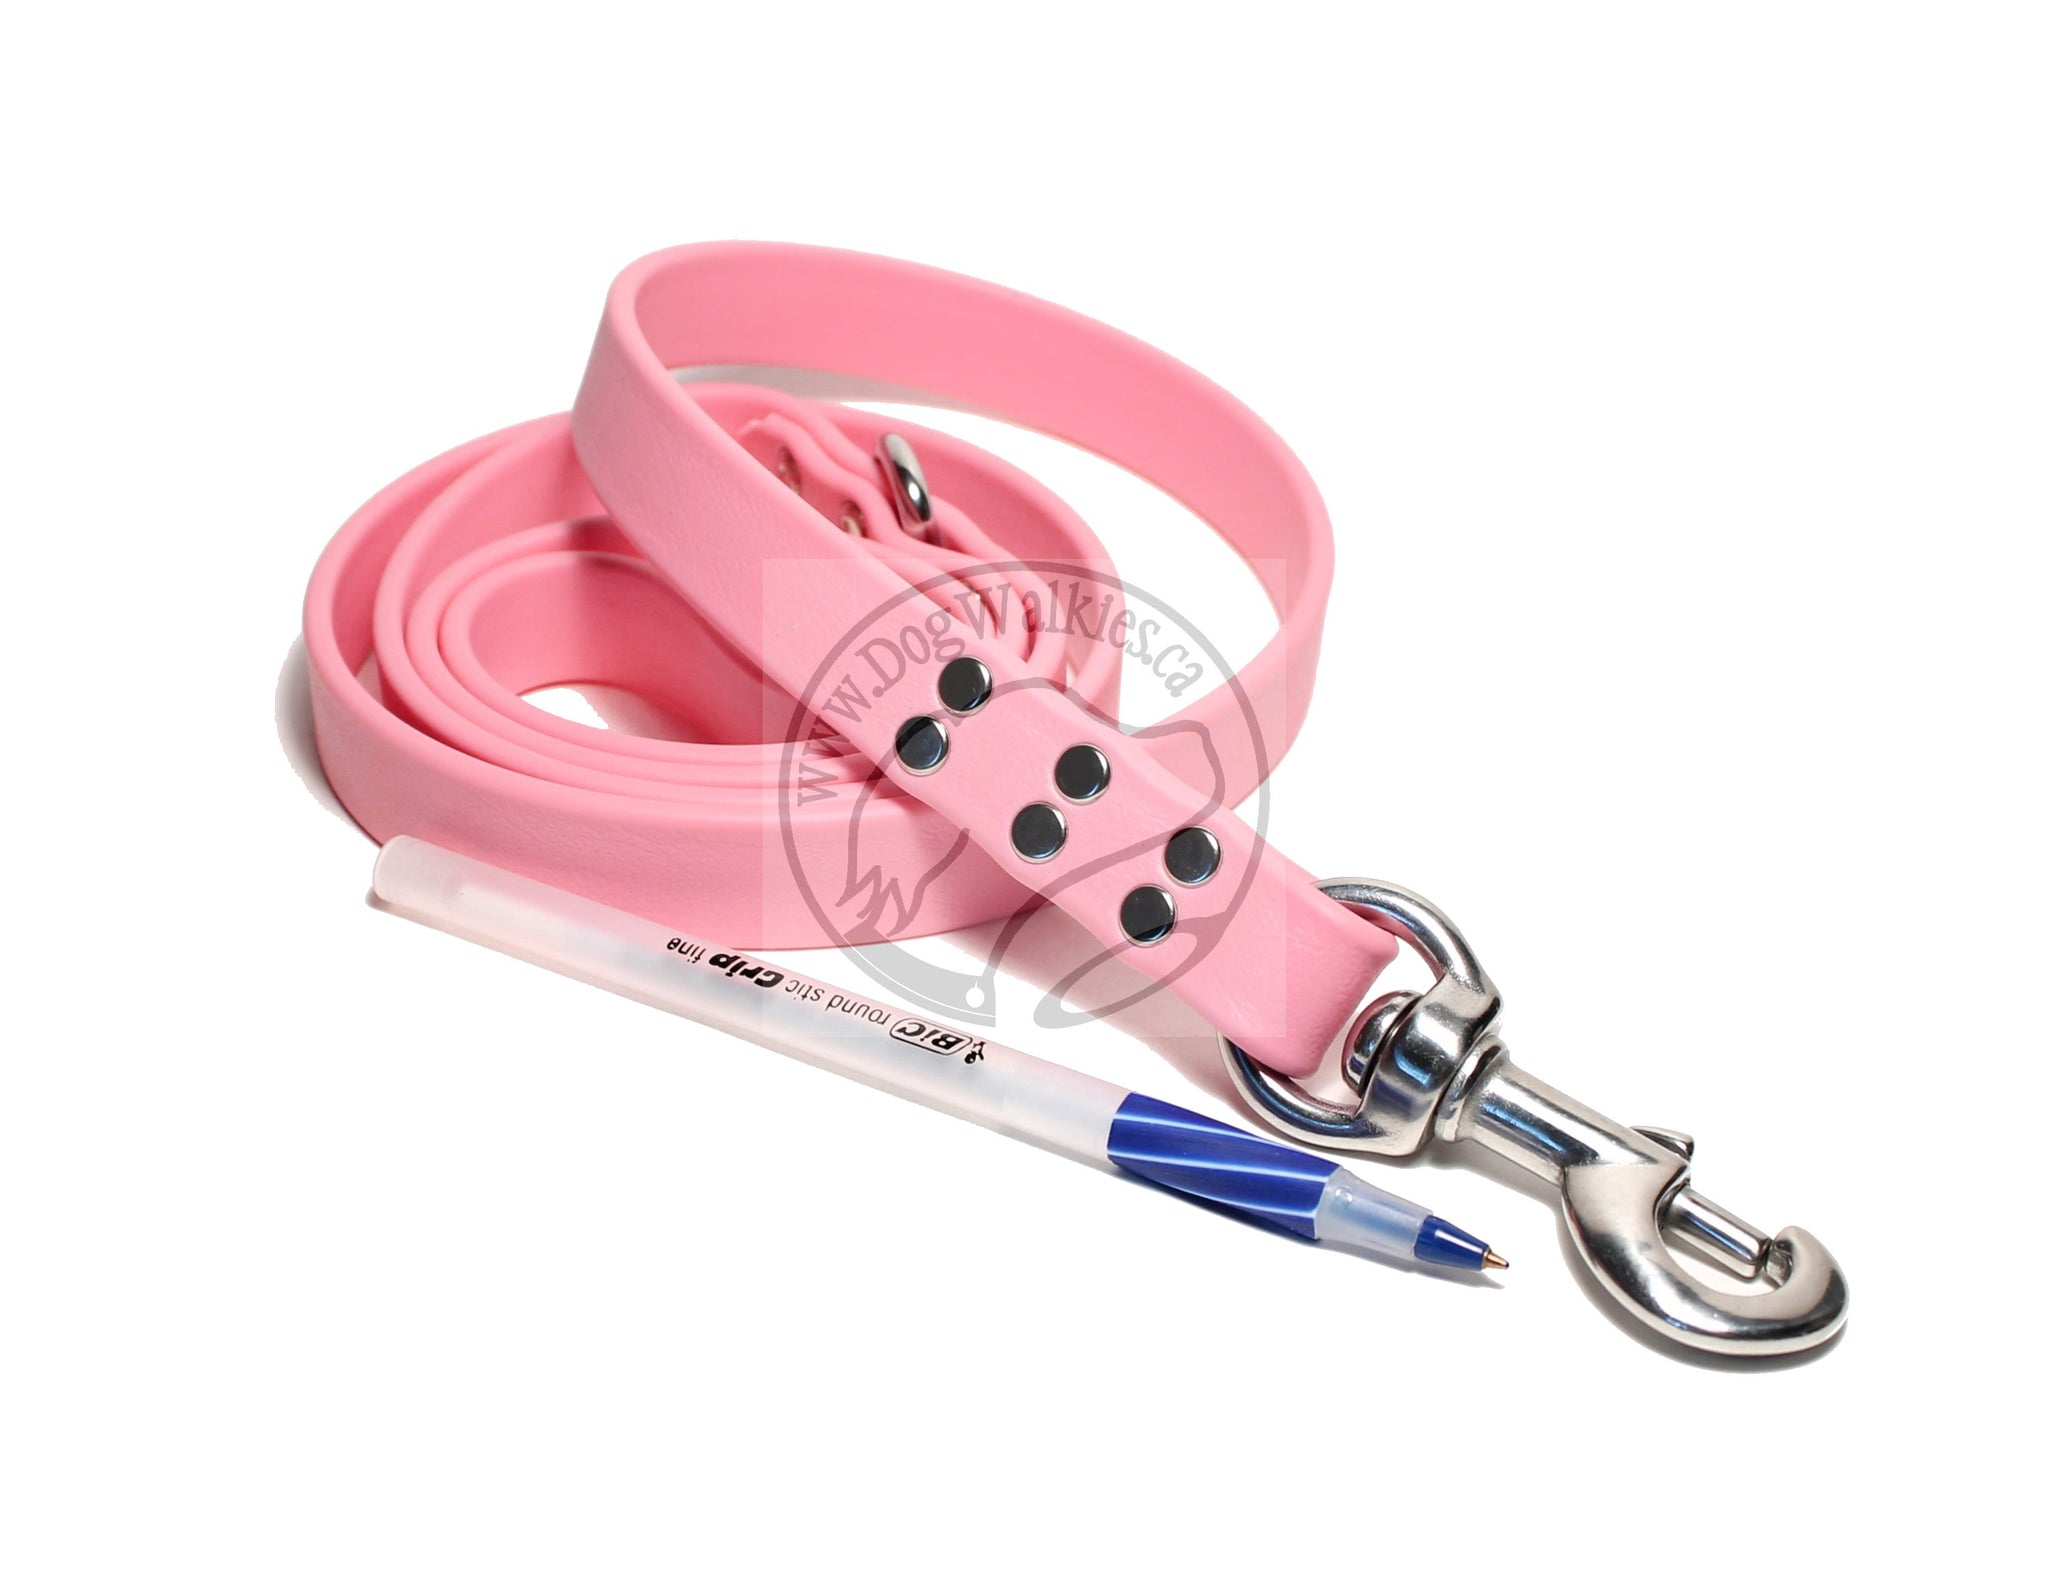 Bubblegum Pink Biothane Large Dog Leash